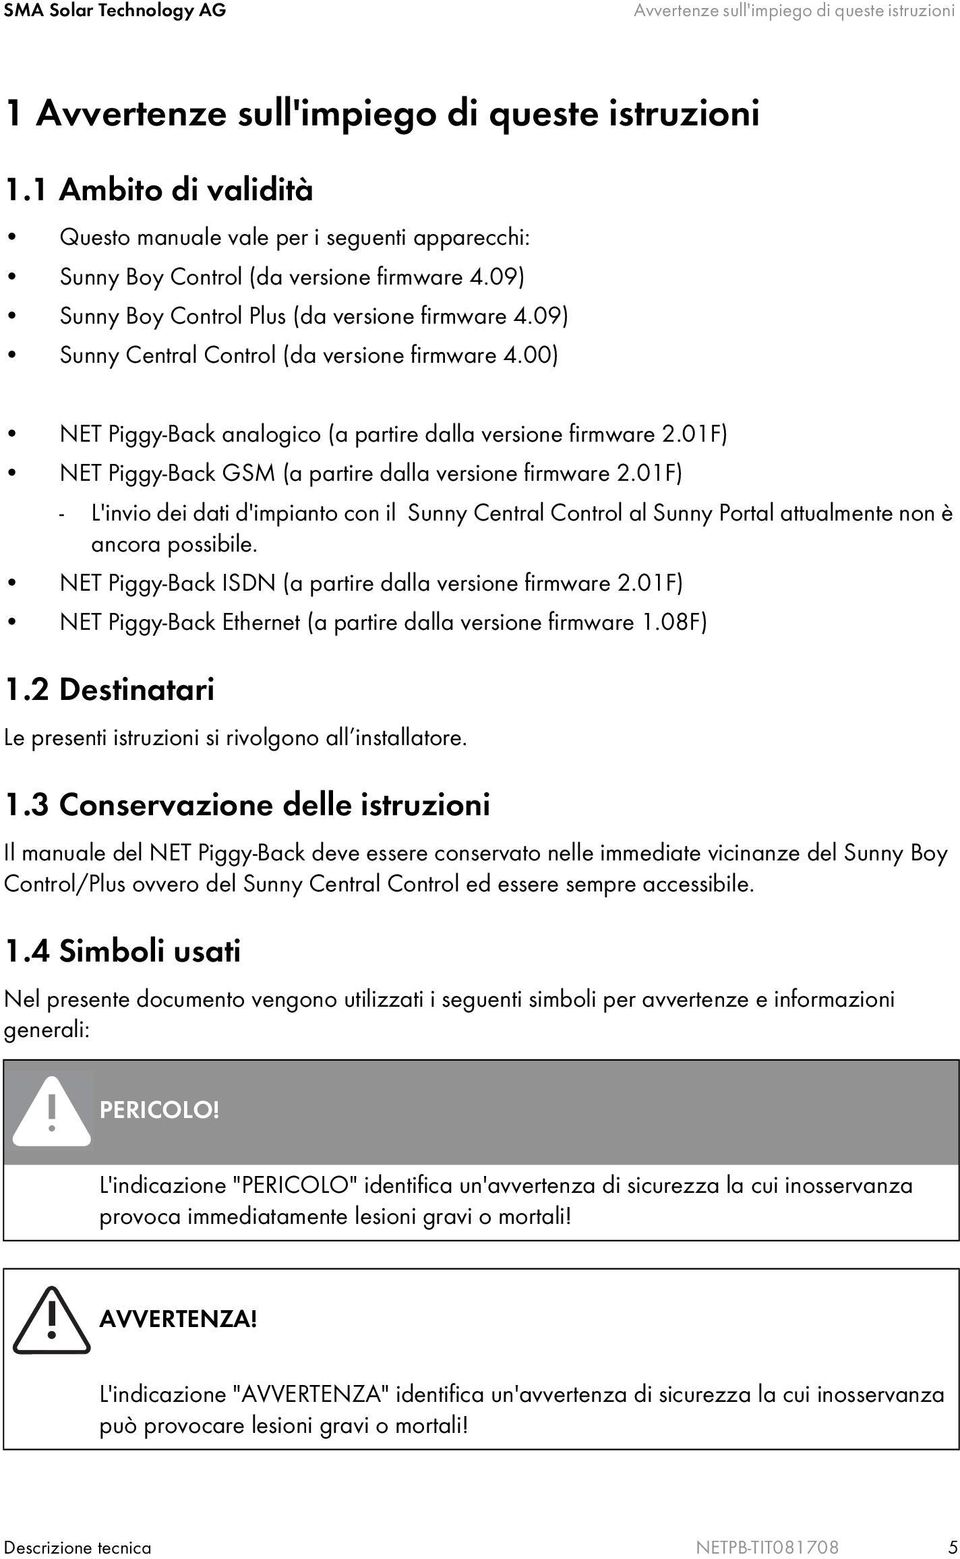 09) Sunny Central Control (da versione firmware 4.00) NET Piggy-Back analogico (a partire dalla versione firmware 2.01F) NET Piggy-Back GSM (a partire dalla versione firmware 2.